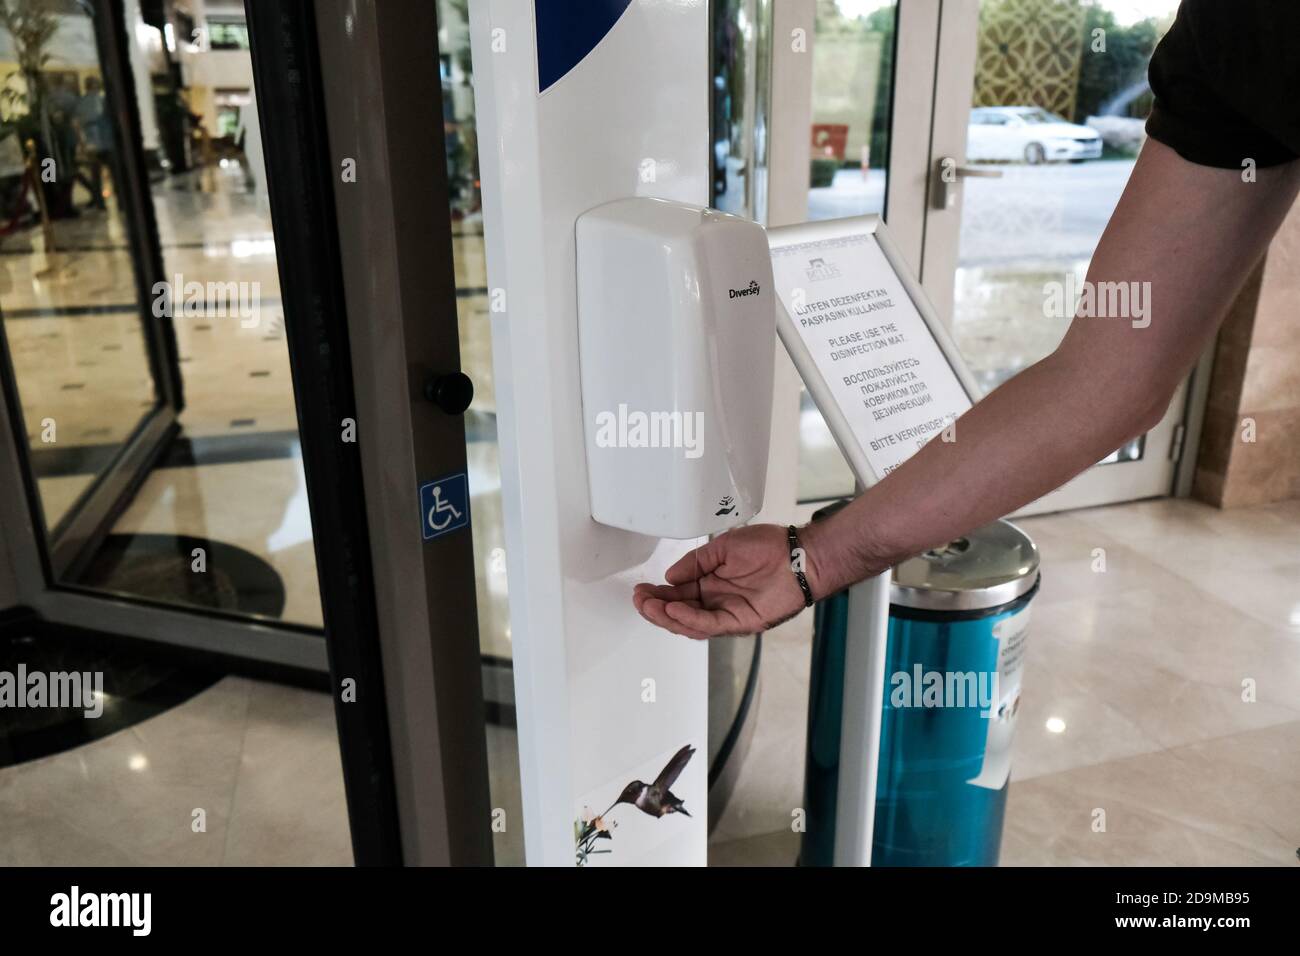 Belek, Turquie - octobre 2020 : touriste utilisant un désinfectant pour les mains à l'entrée de l'hôtel. Mesures de sécurité dans les hôtels tout compris pour prévenir la propagation du coronavirus. Banque D'Images